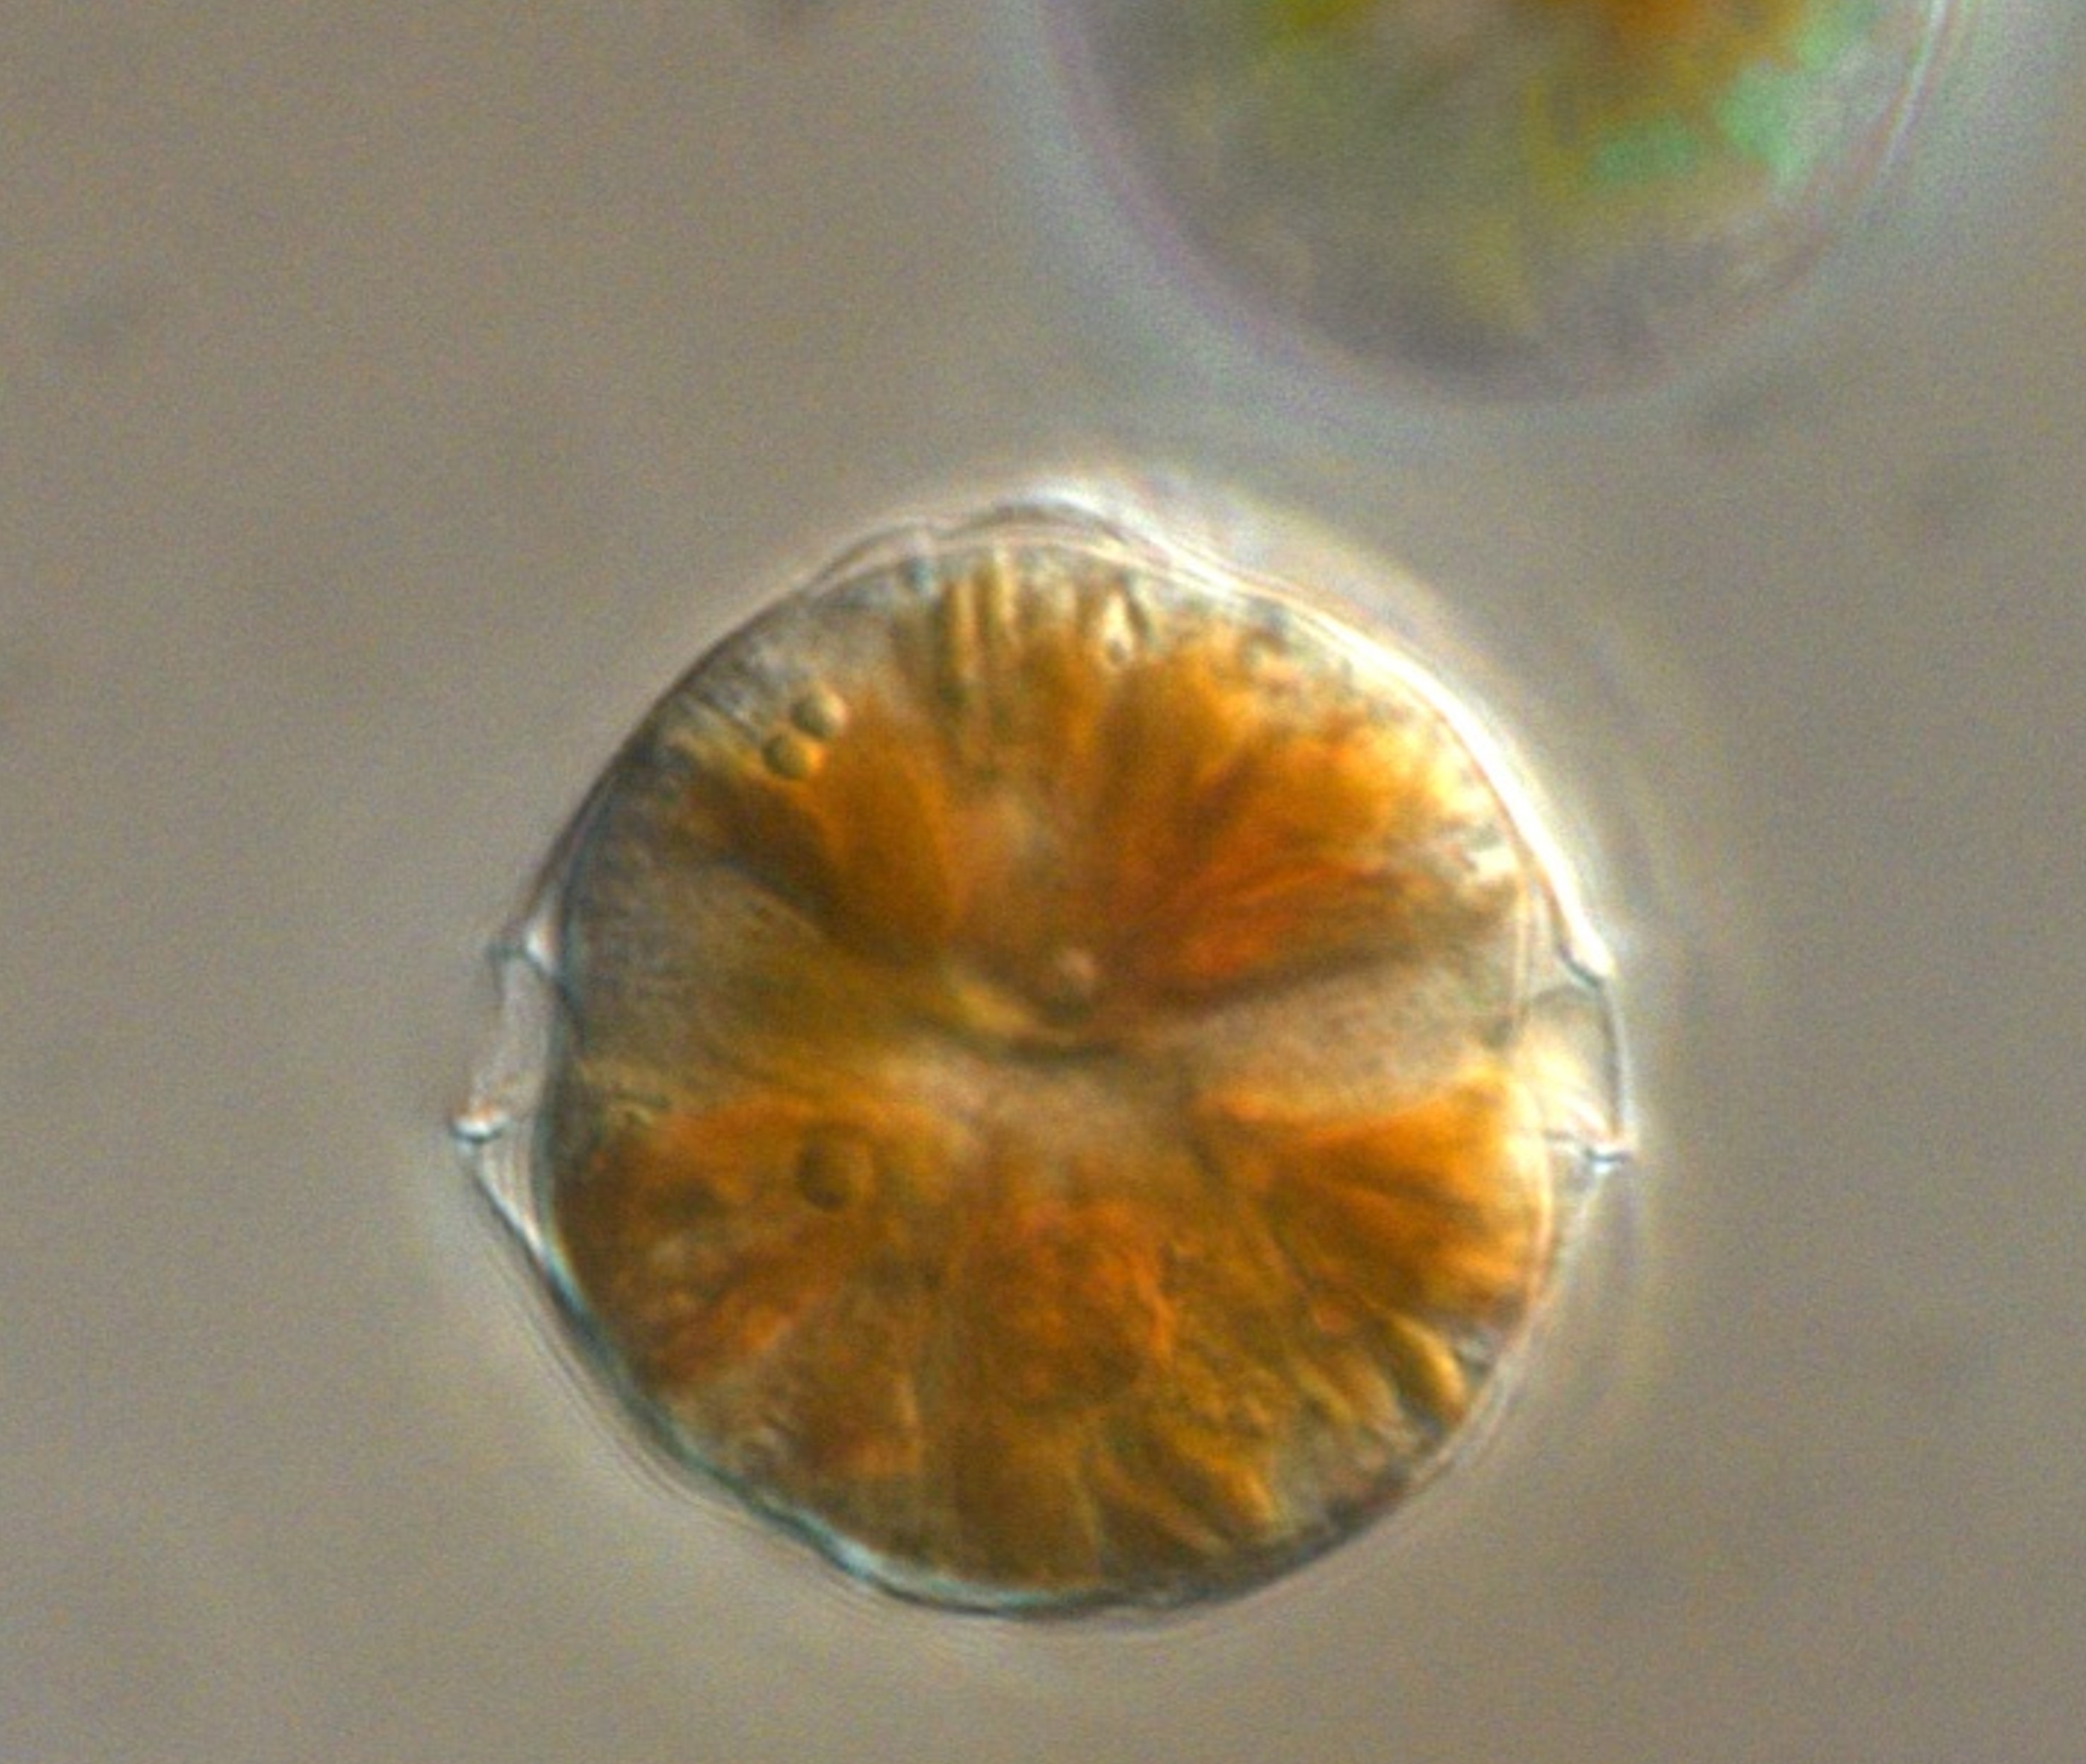 Dinoflagellate Alexandrium (c) Ein gesunder Dinoflagellat der Gattung Alexandrium, (c) Yameng Lu